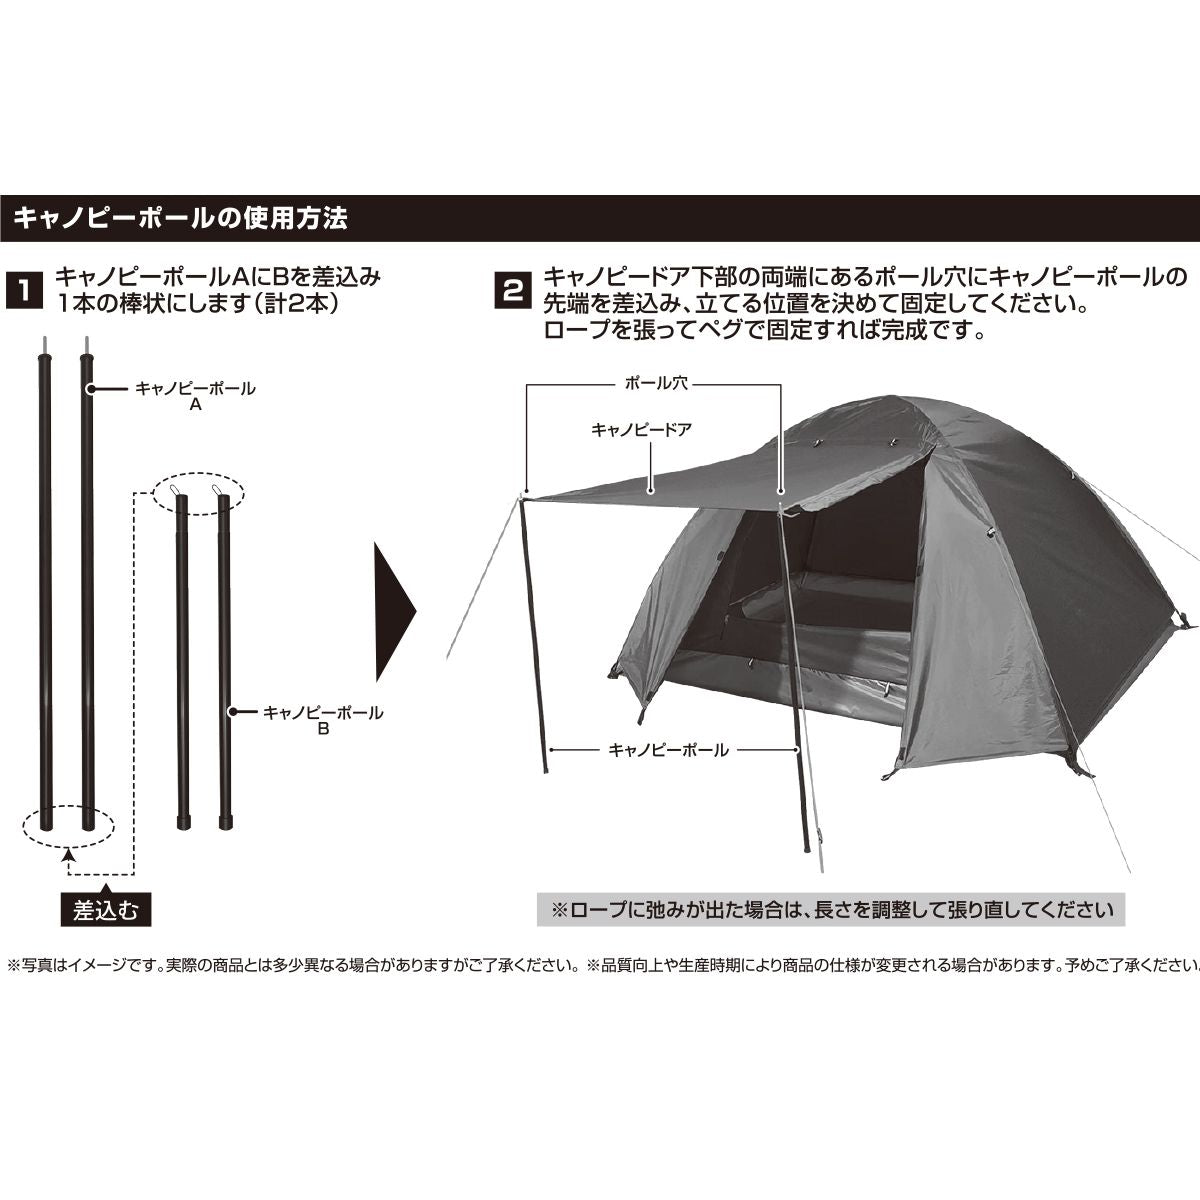 【OUTLET】テント ドーム型 組立て式マルチドームテント 2人用 HAC3557 Montagna モンターナ  簡単設営 簡易テント キャンプテント アッシュグレー 　329696